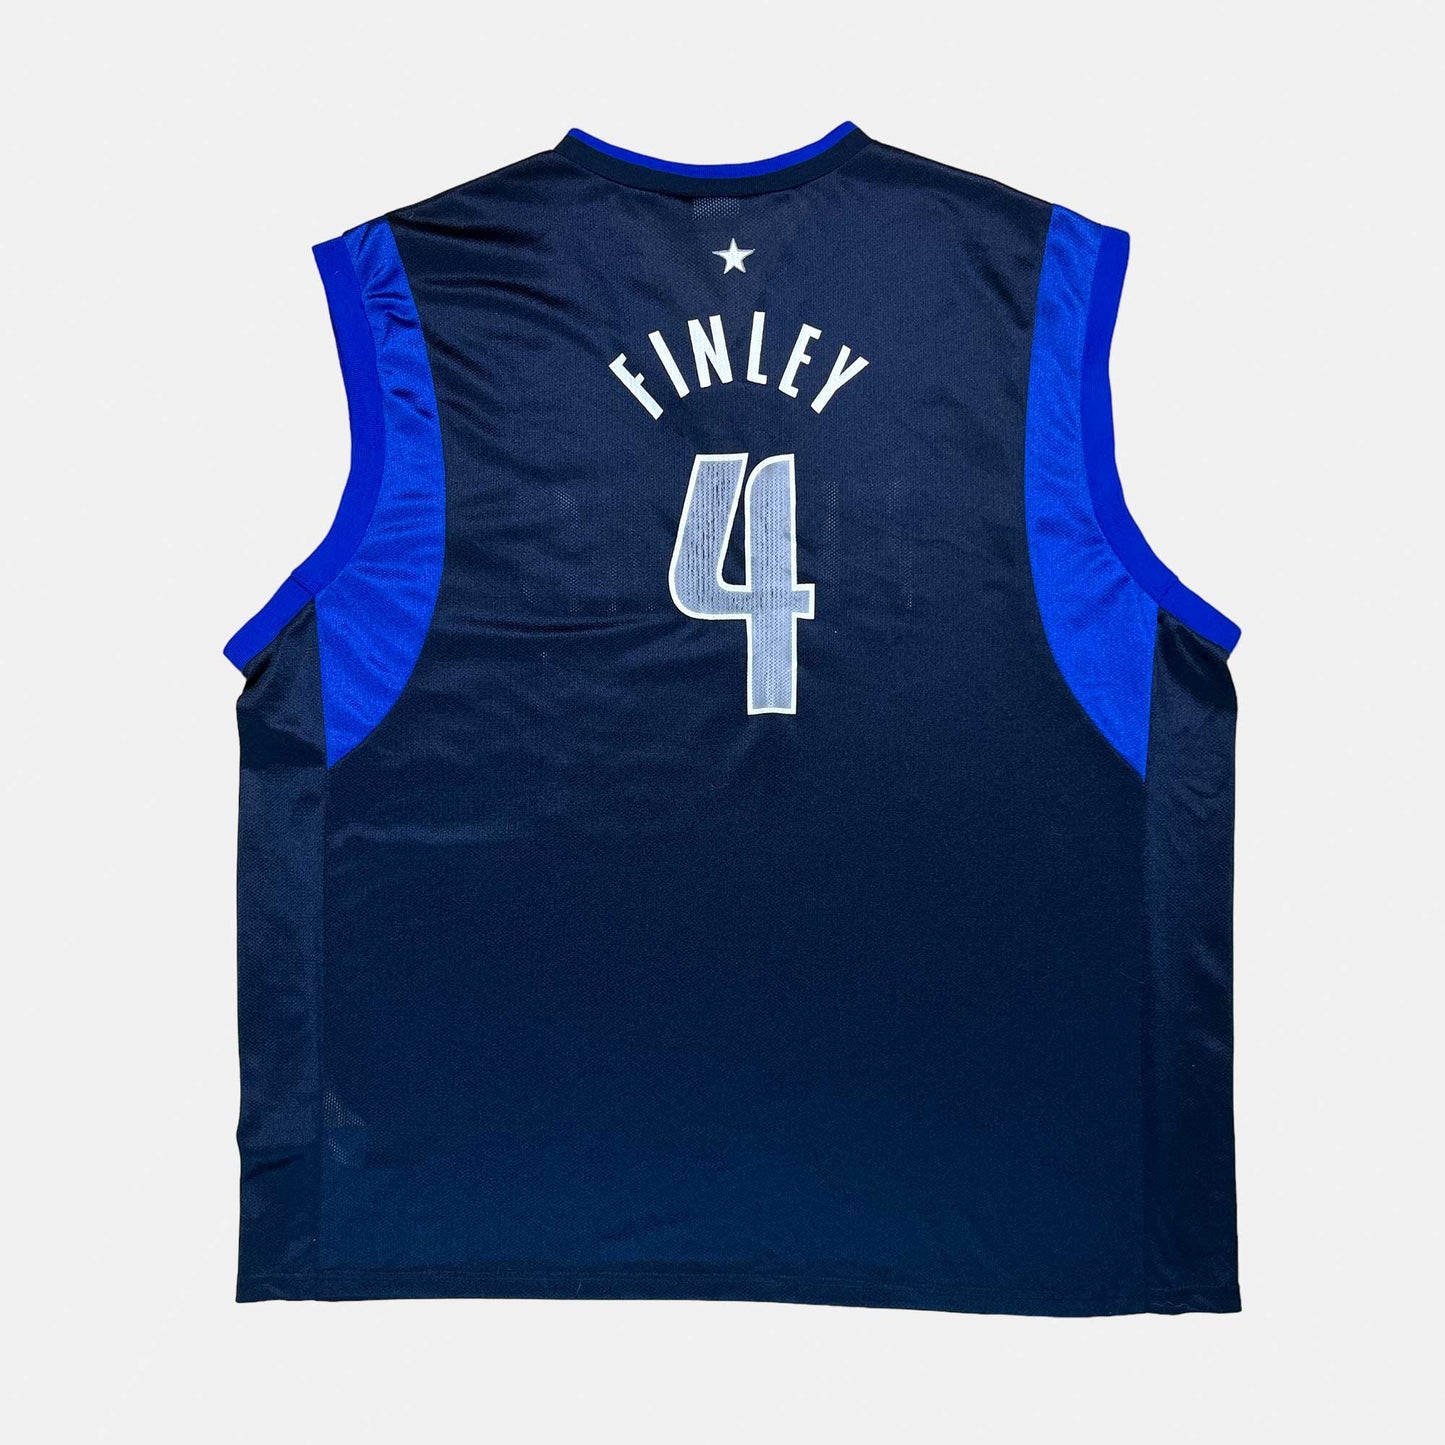 Dallas Mavericks - Michael Finley - Größe XL / 48 - Champion - NBA Trikot